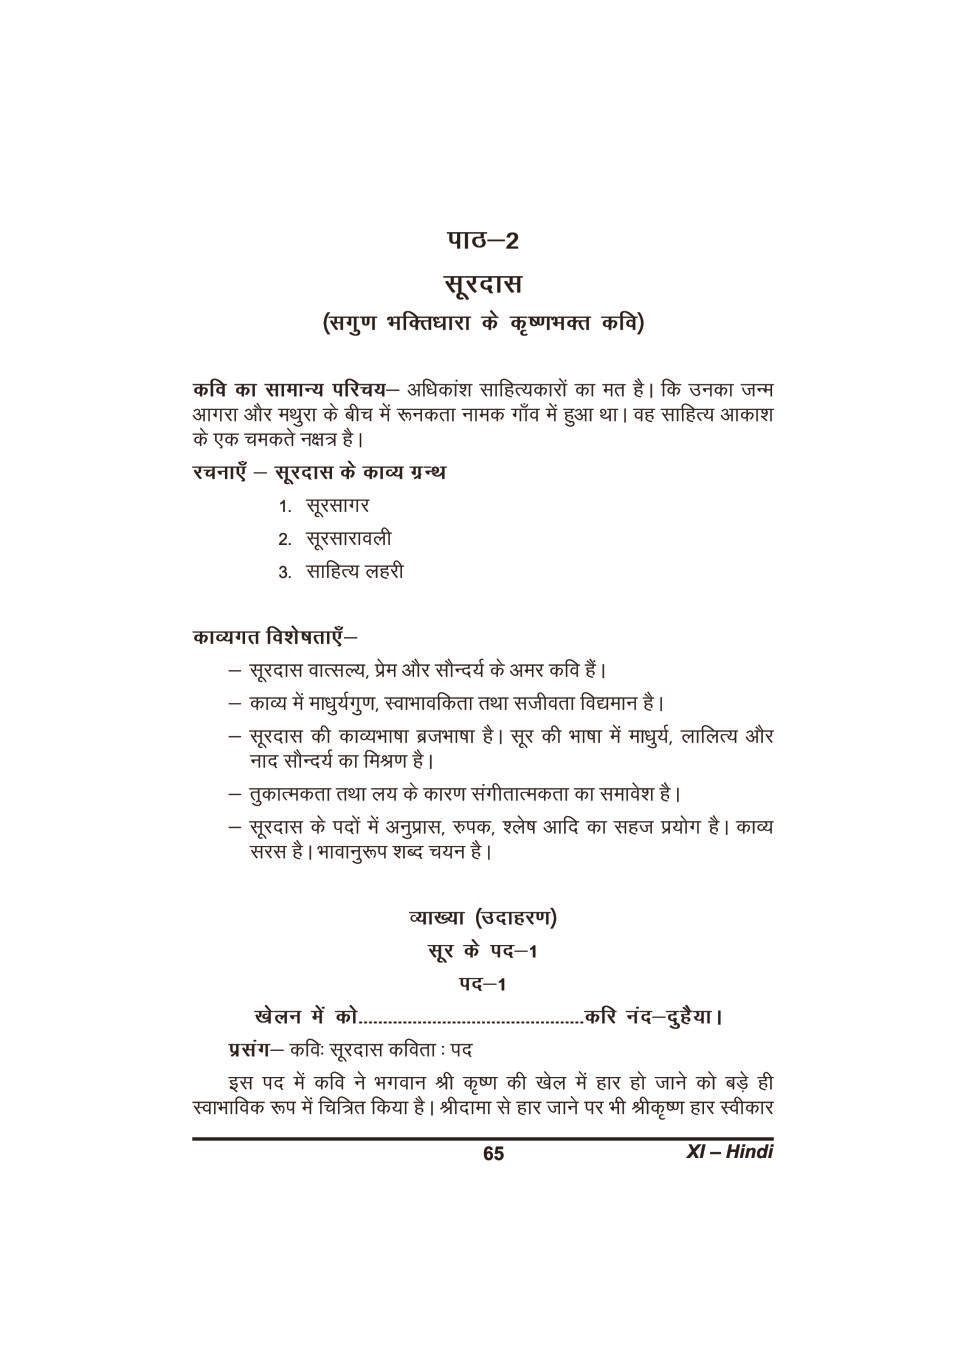 कक्षा 11 हिंदी के नोट्स - सूरदास - Page 1